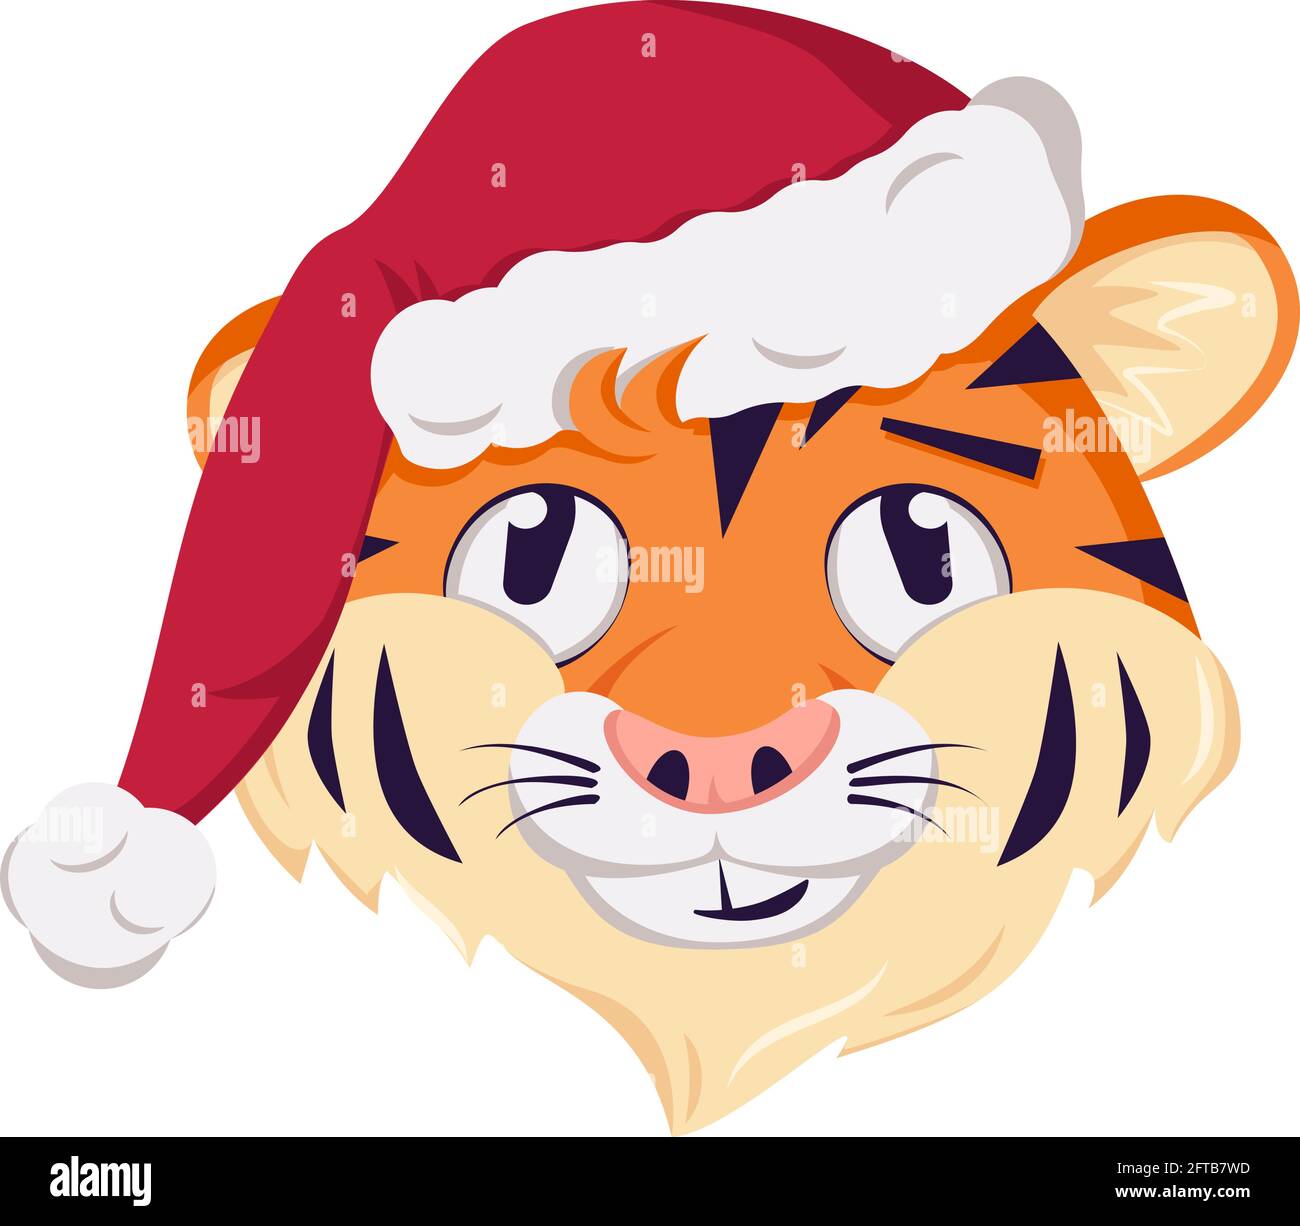 Niedliche lustige oder lächelnde Tiger-Charakter, simbol des neuen Jahres in einer roten Weihnachtsmütze. Wilde Tiere Afrikas, mit nachdenklichen Emotionen konfrontiert Stock Vektor